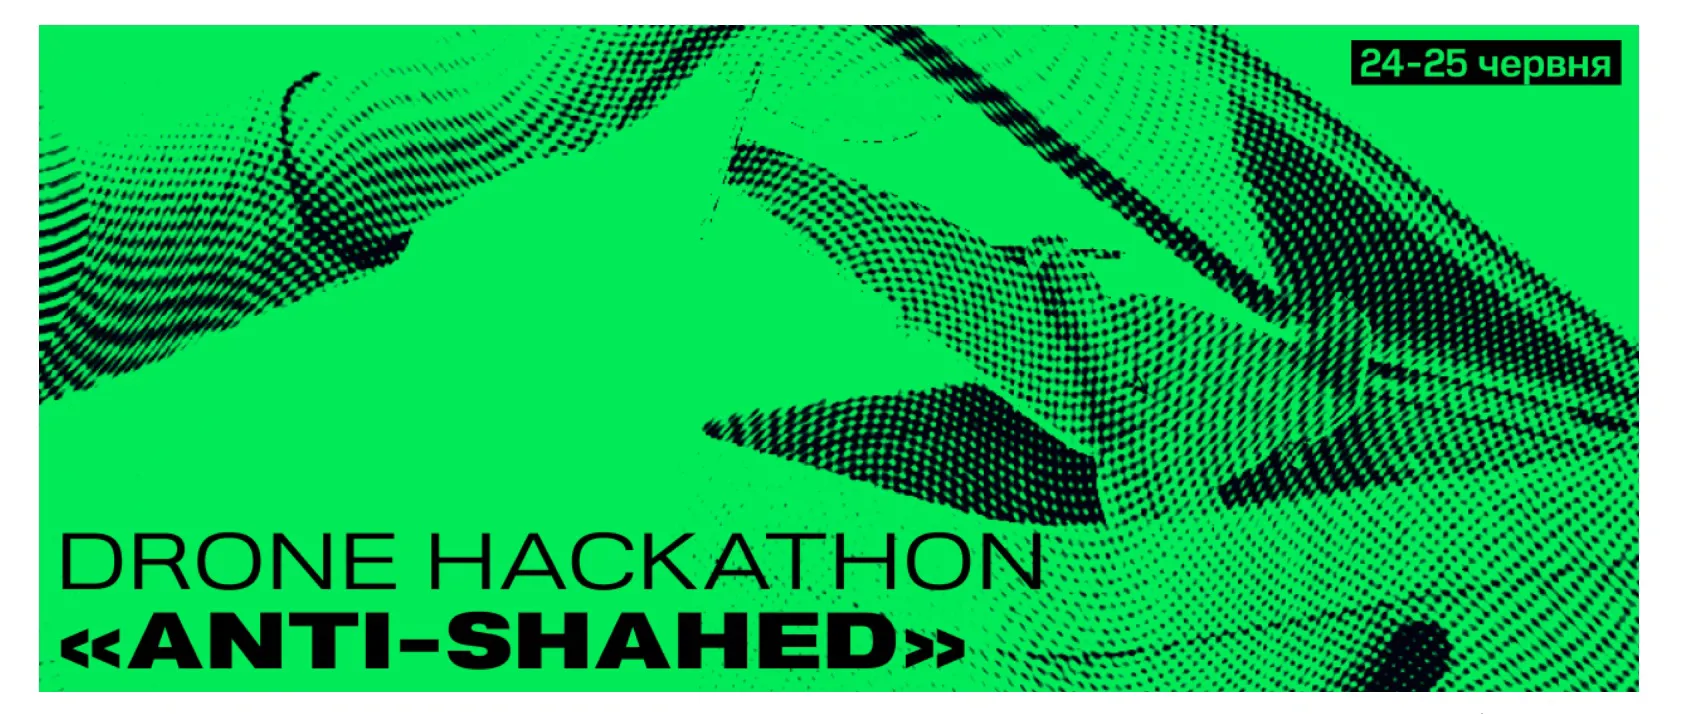 Три победителя в Drone Hackathon «Anti-Shahеd» получили контракты на $1 млн от Минобороны